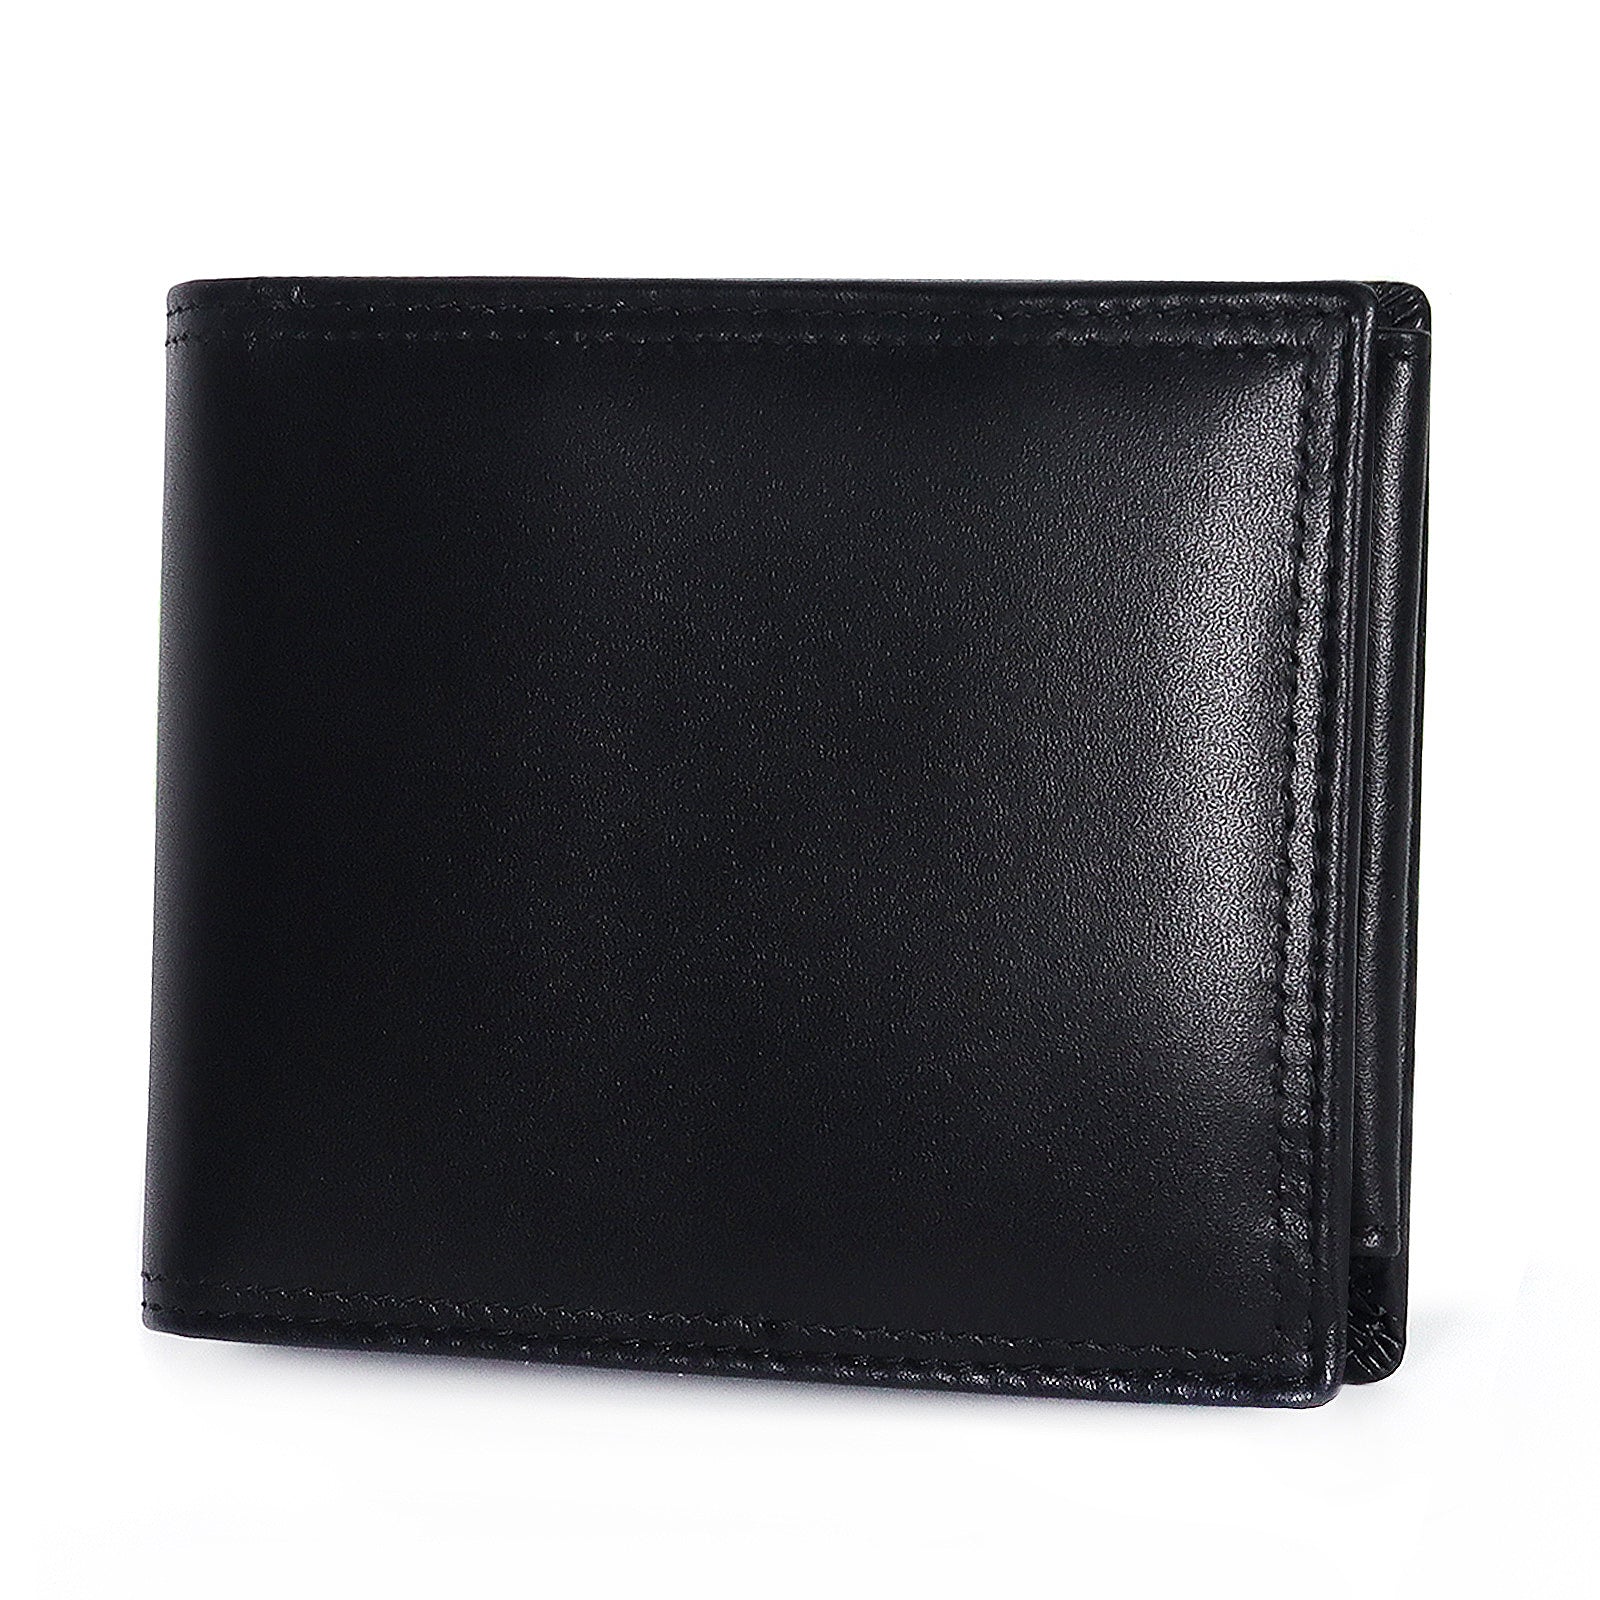 TAN.TOMI Brieftasche Herren große Geldbörse lange Brieftasche, mit vielen Kreditkartenfächern und Fotofächern.